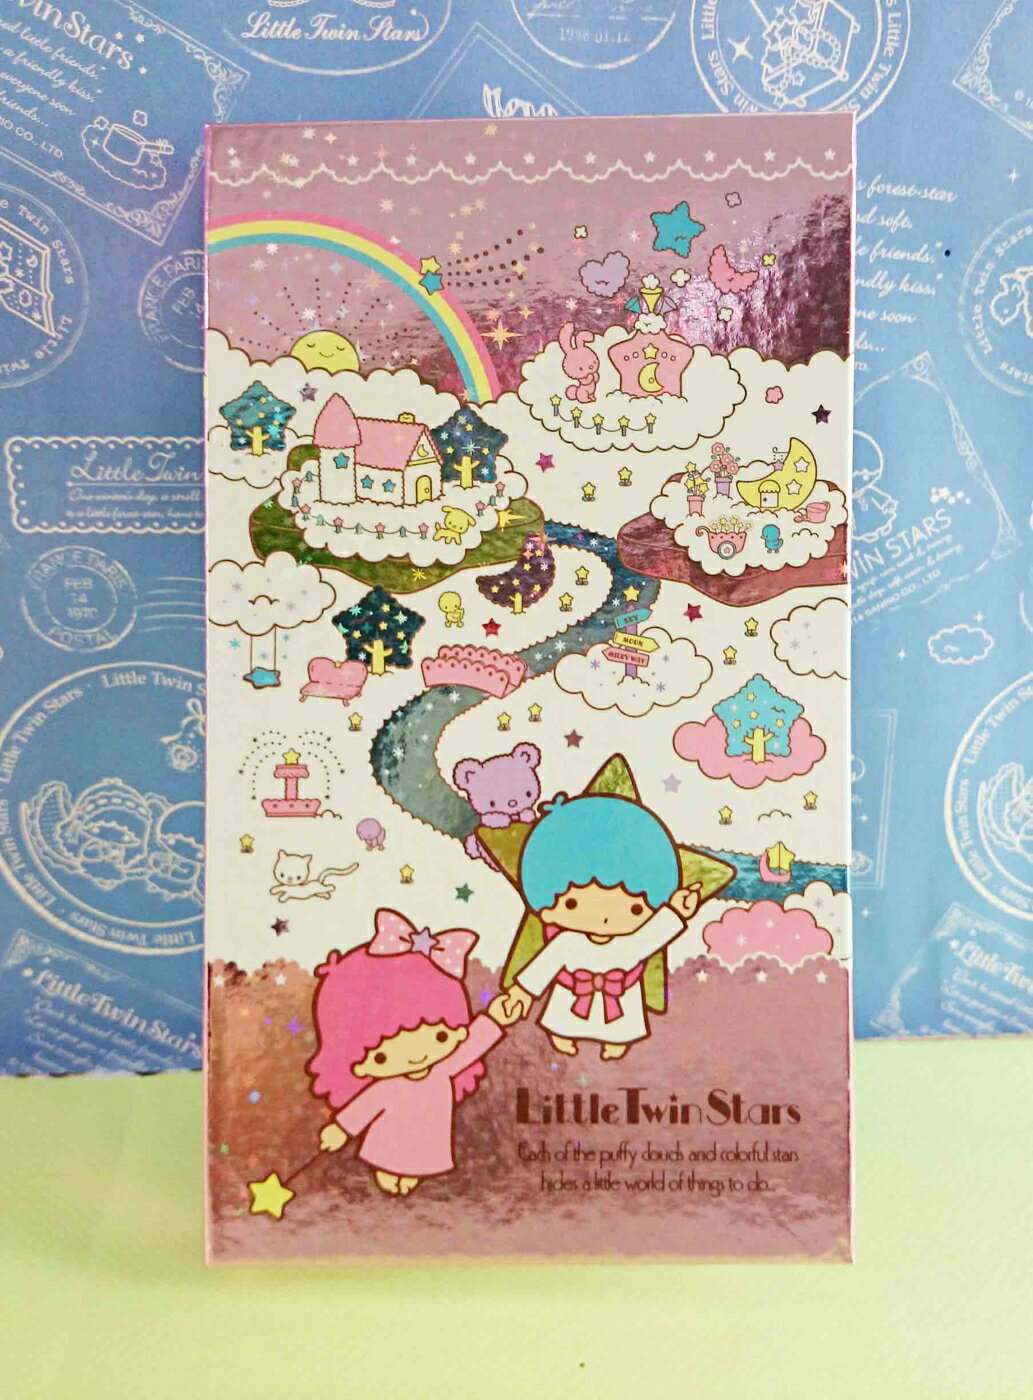 【震撼精品百貨】Little Twin Stars KiKi&LaLa 雙子星小天使 閃亮雷射版夾 震撼日式精品百貨